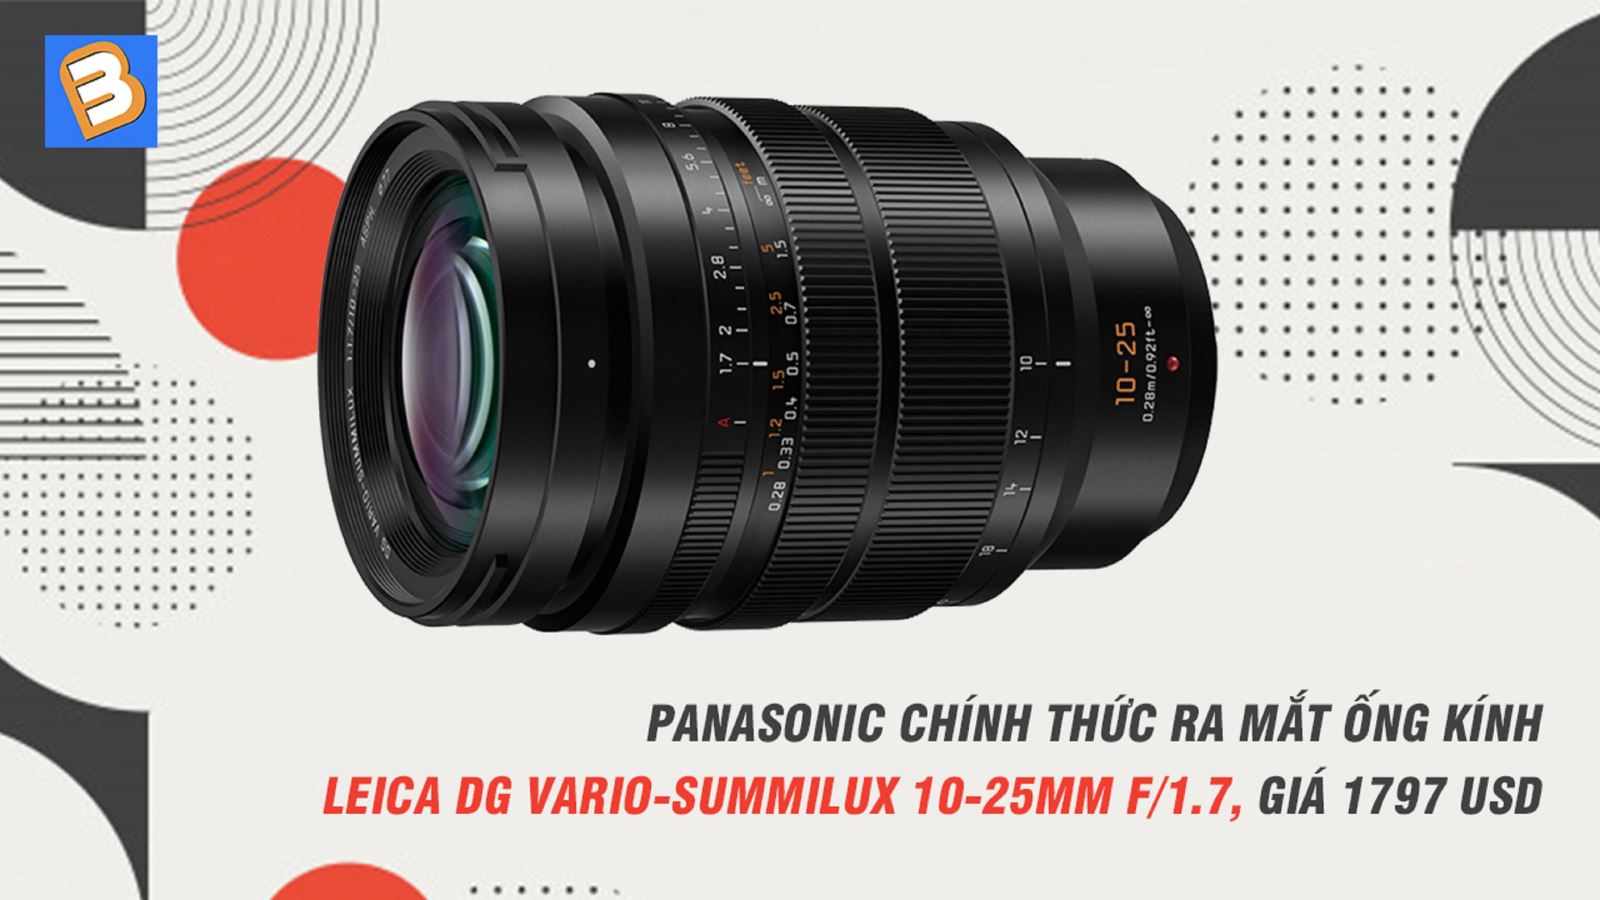 Panasonic chính thức ra mắt ống kính Leica DG Vario-Summilux 10-25mm f/1.7, giá 1797 USD